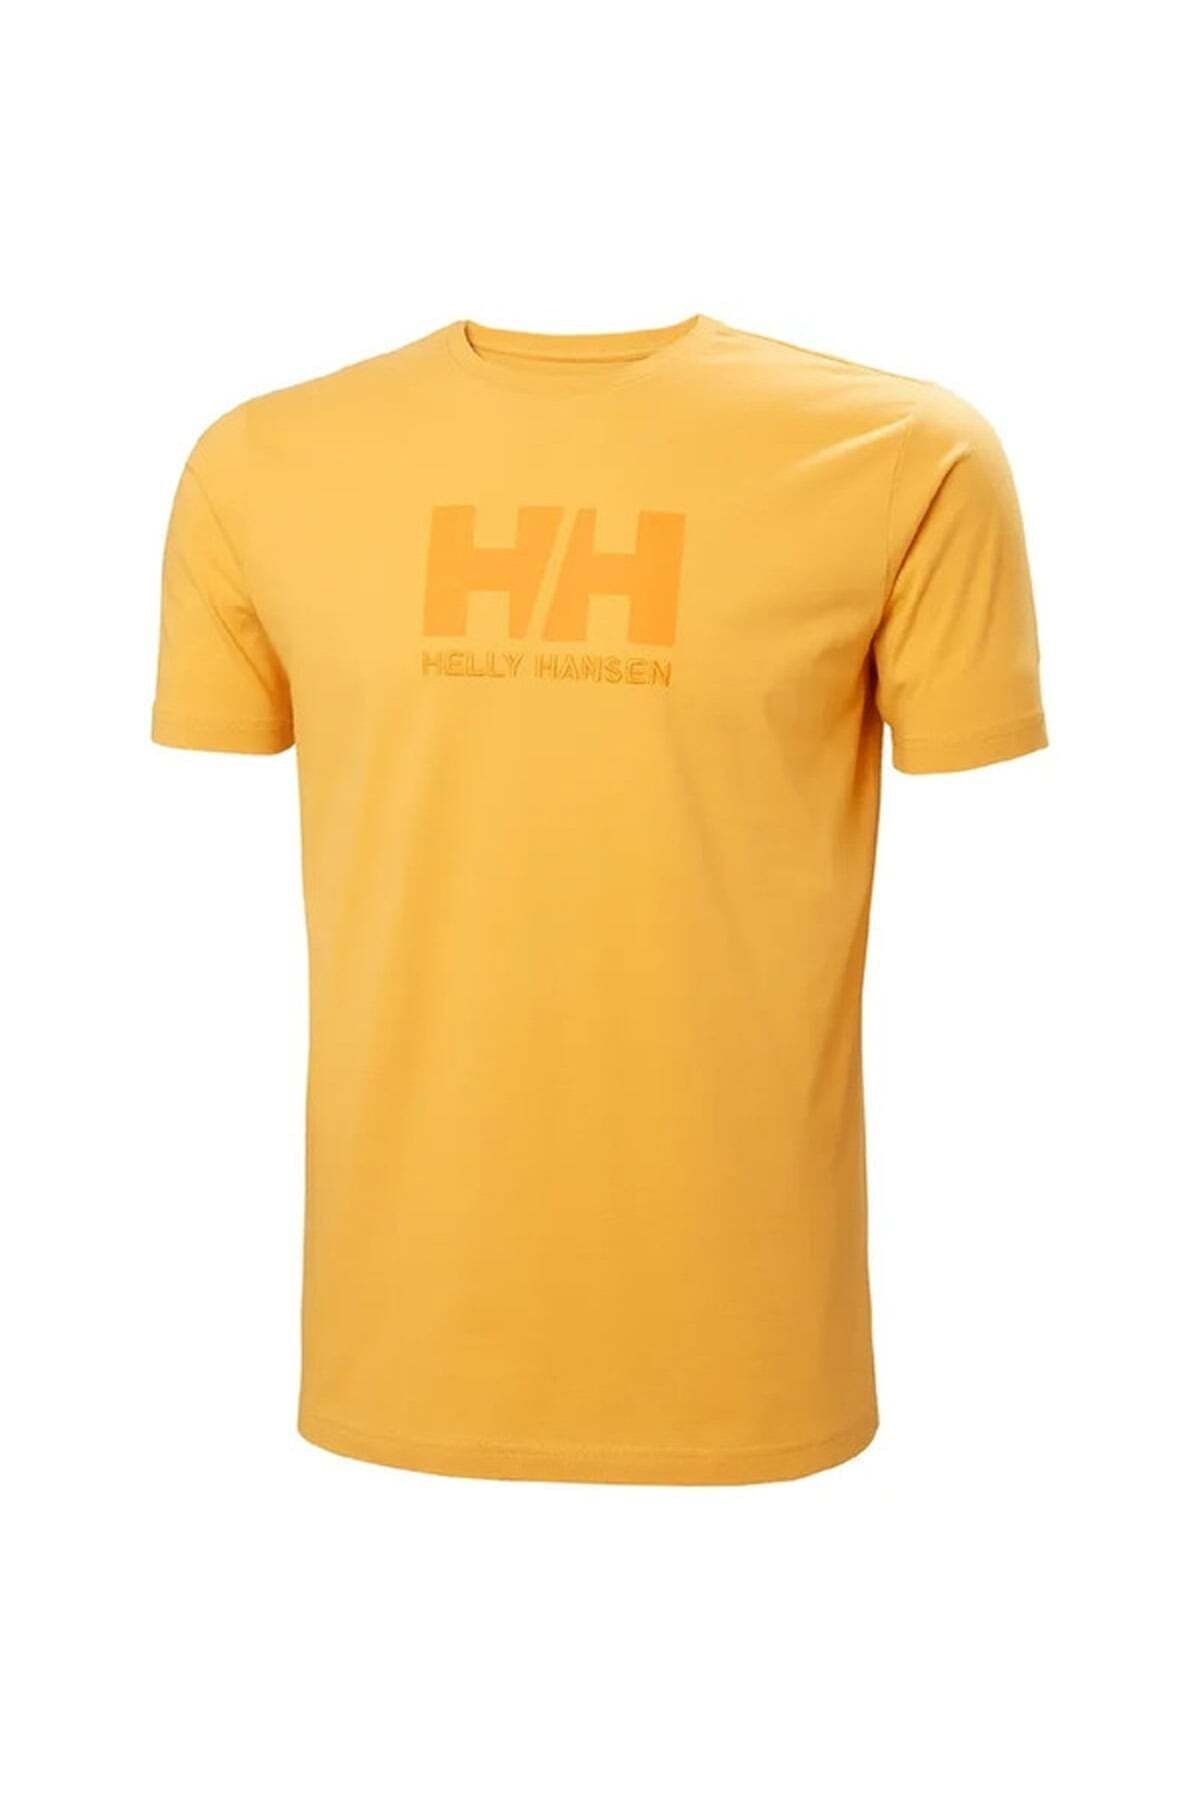 Helly Hansen Logo Erkek T-shirt - 33979